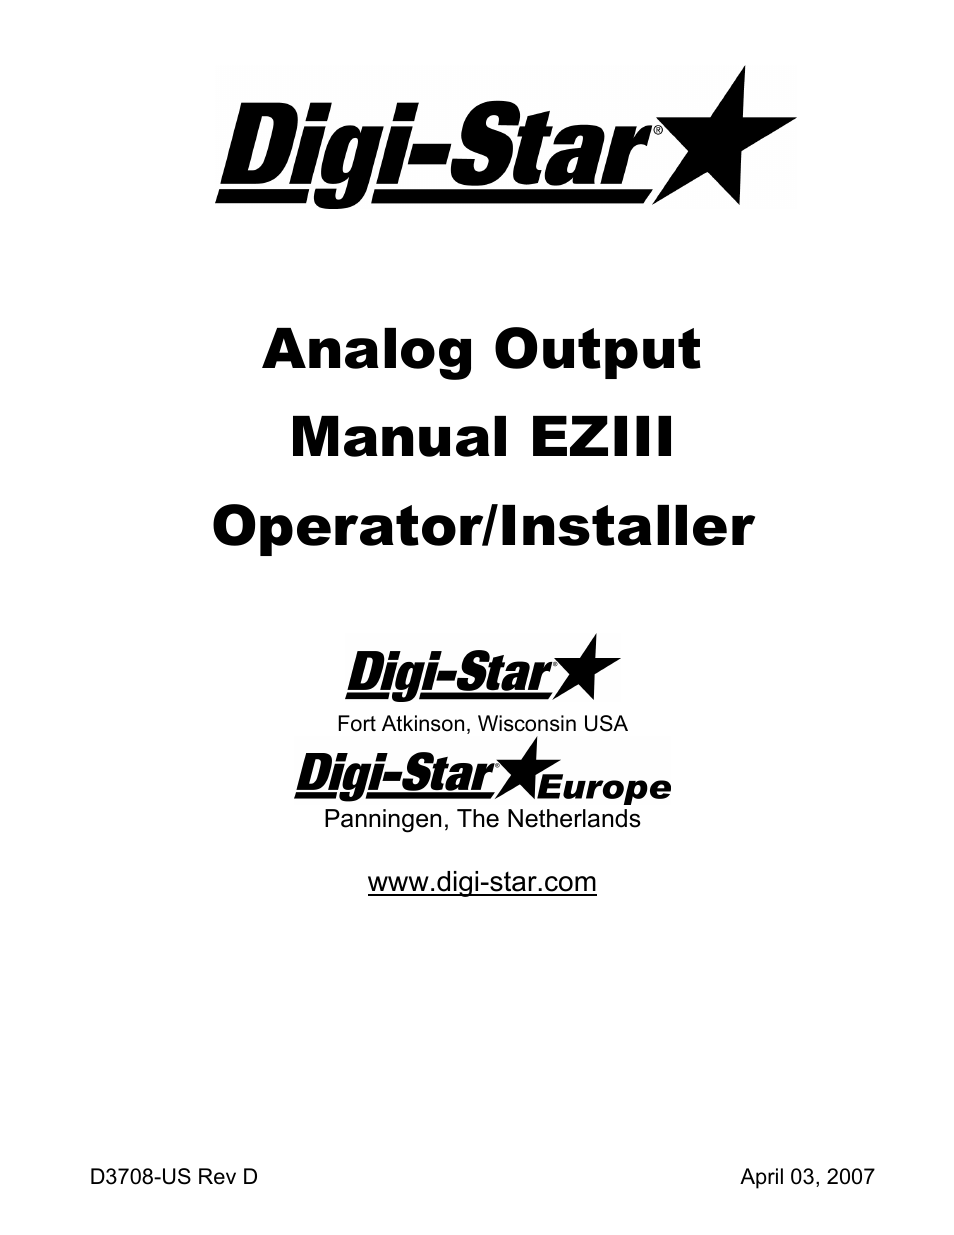 Analog Output EZIII